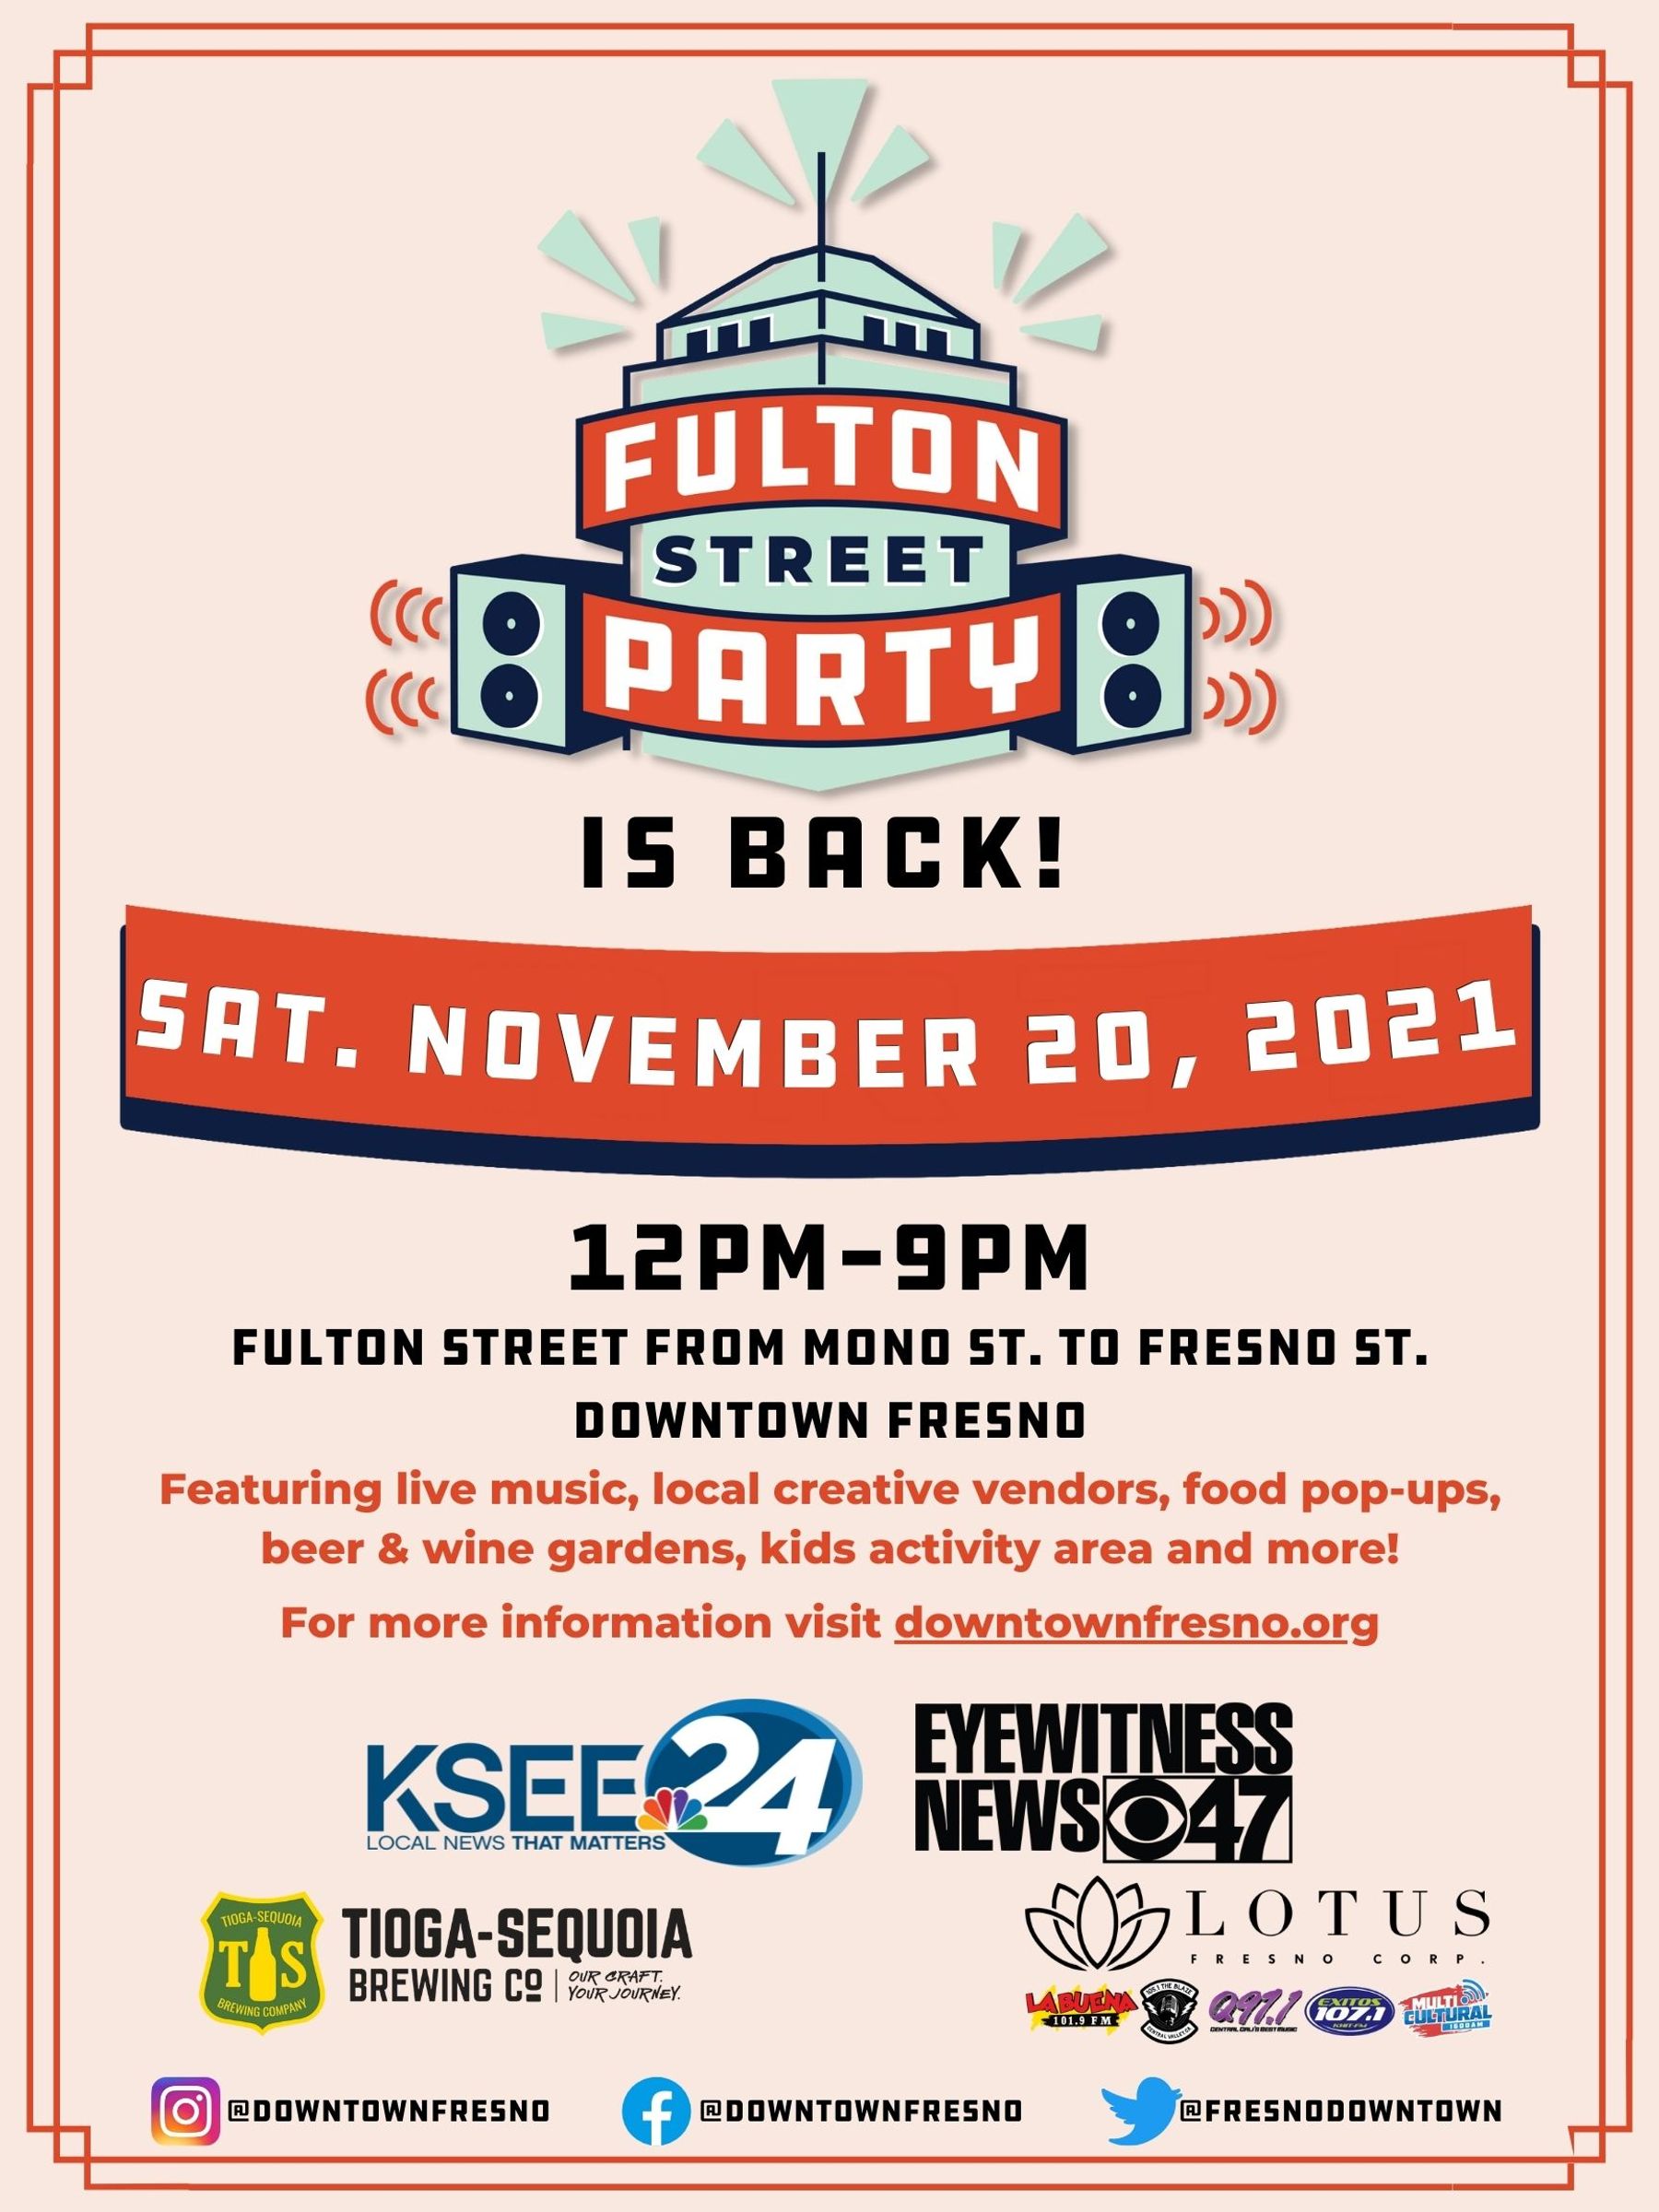 Fulton Street Party! Downtown Fresno